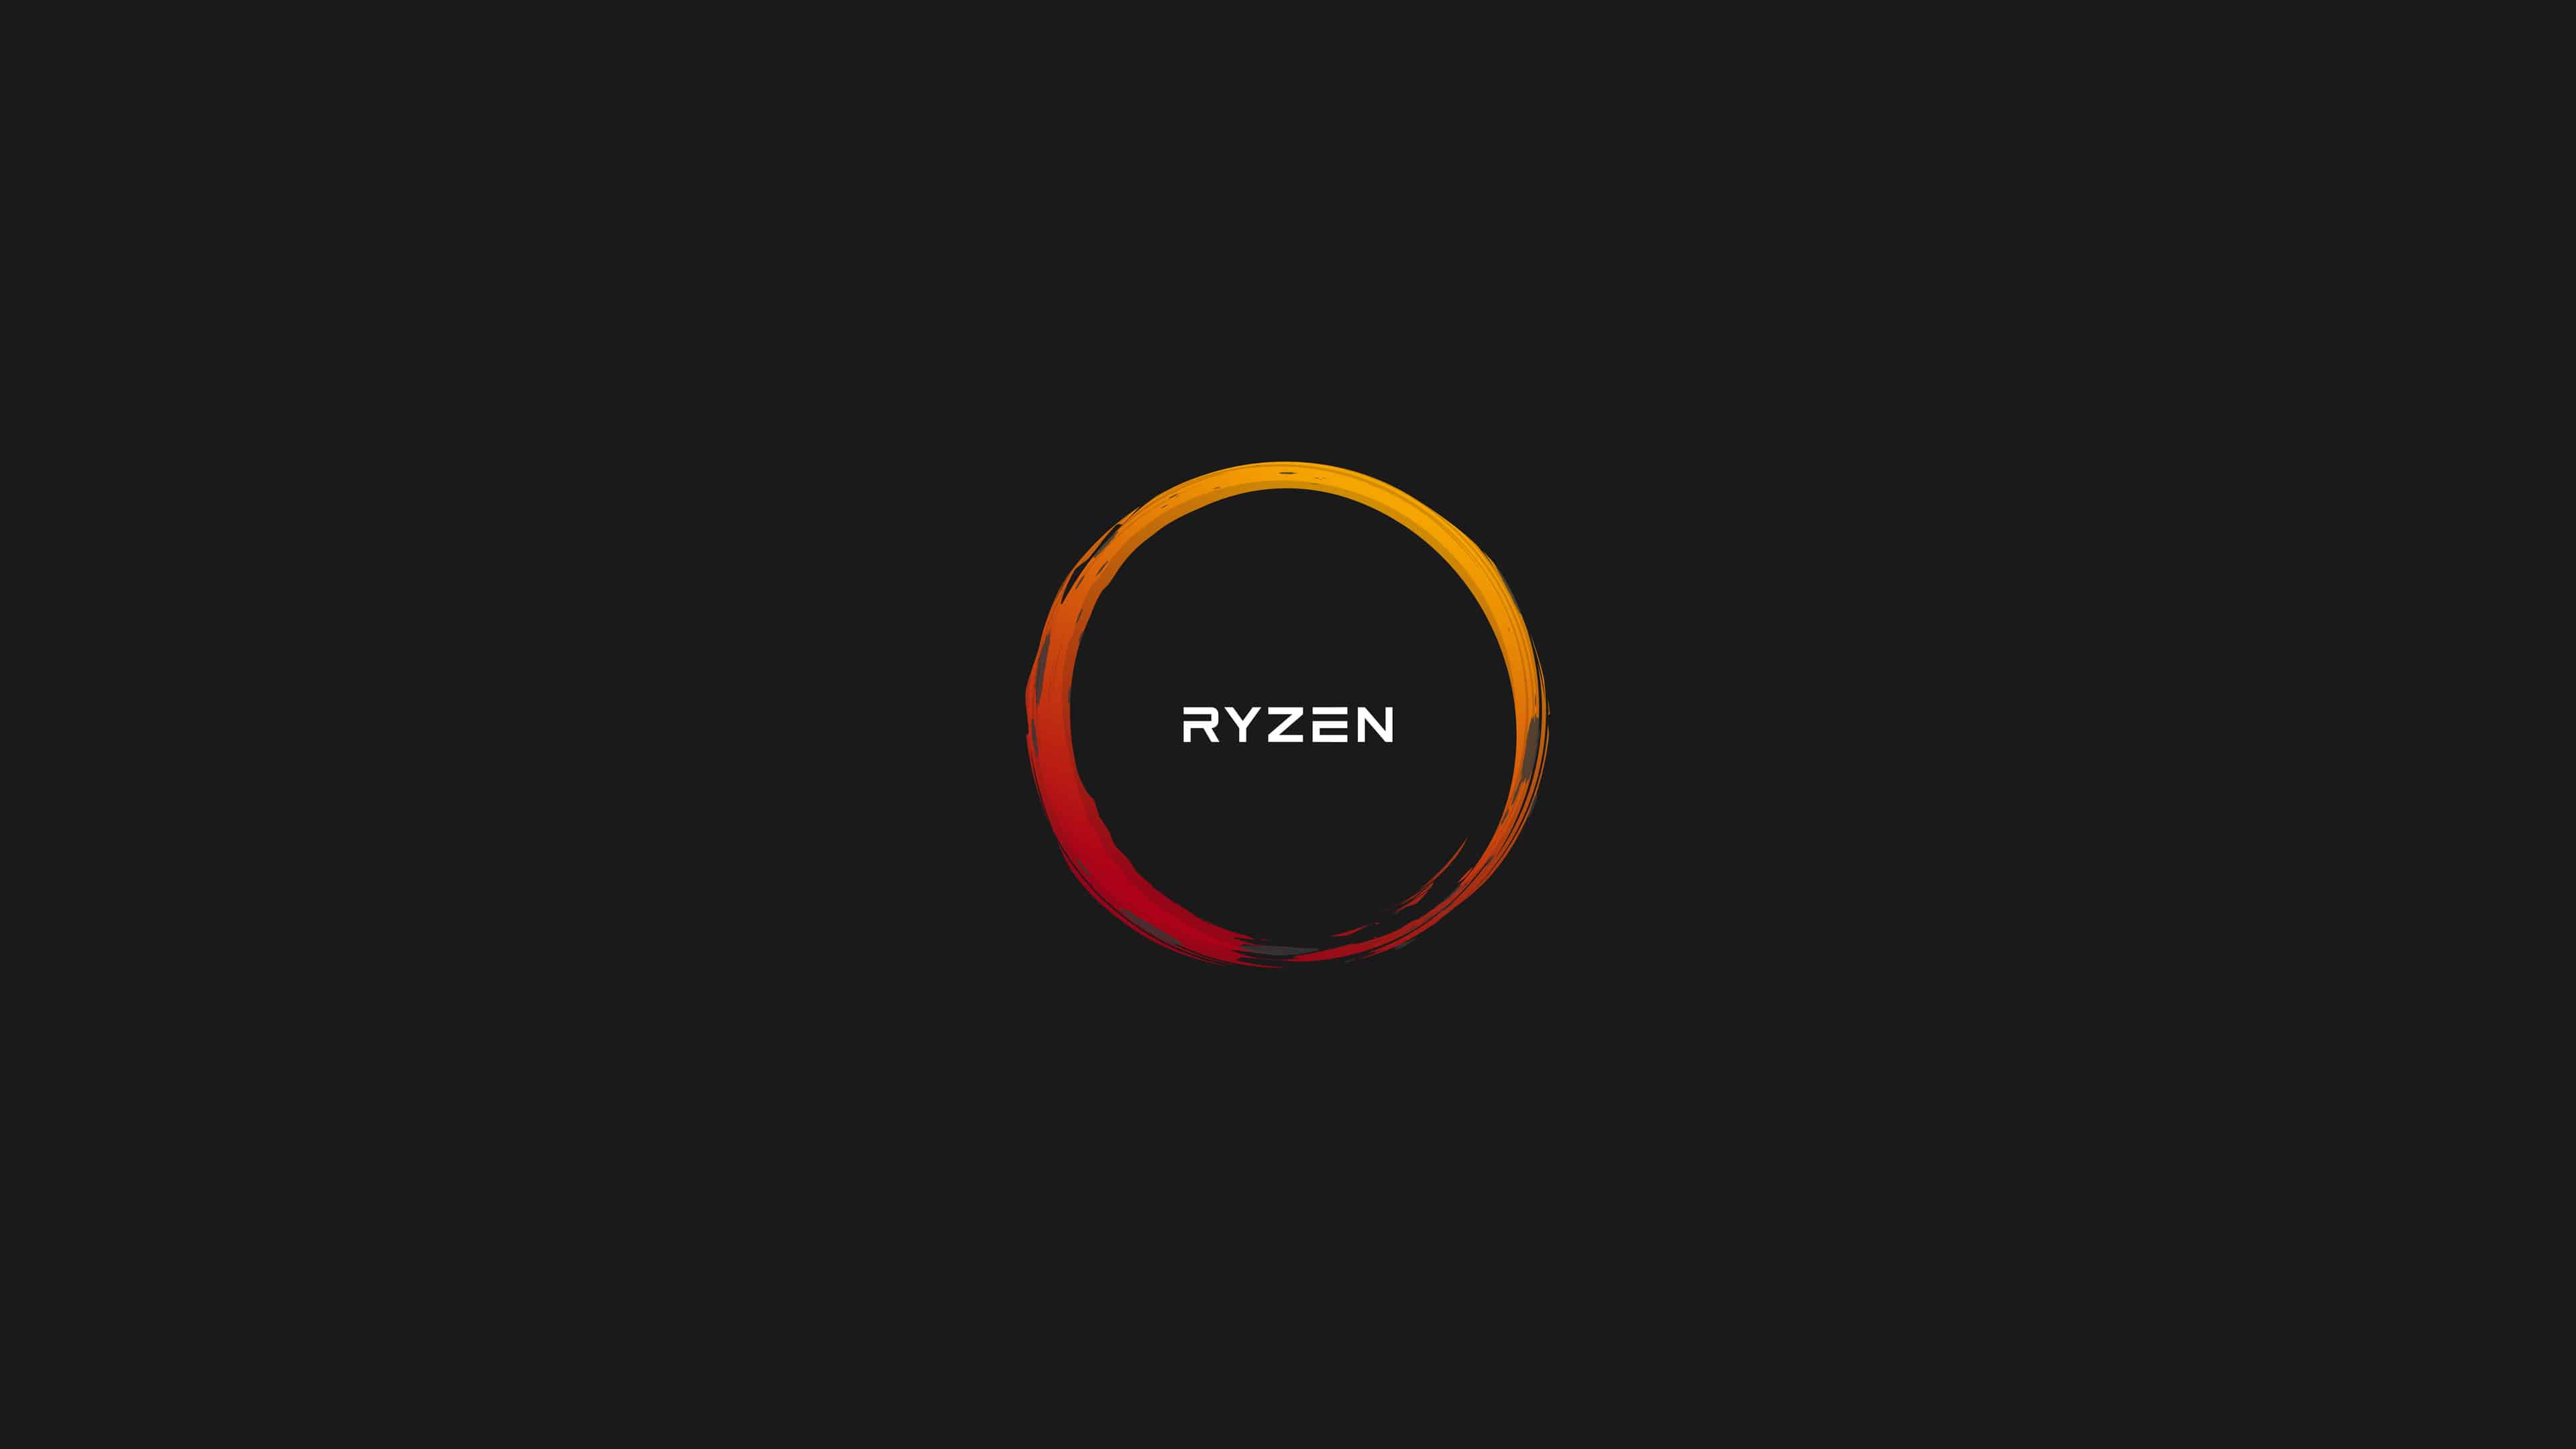 AMD Ryzen 4K Logo - AMD Ryzen Logo UHD 4K Wallpaper | Pixelz